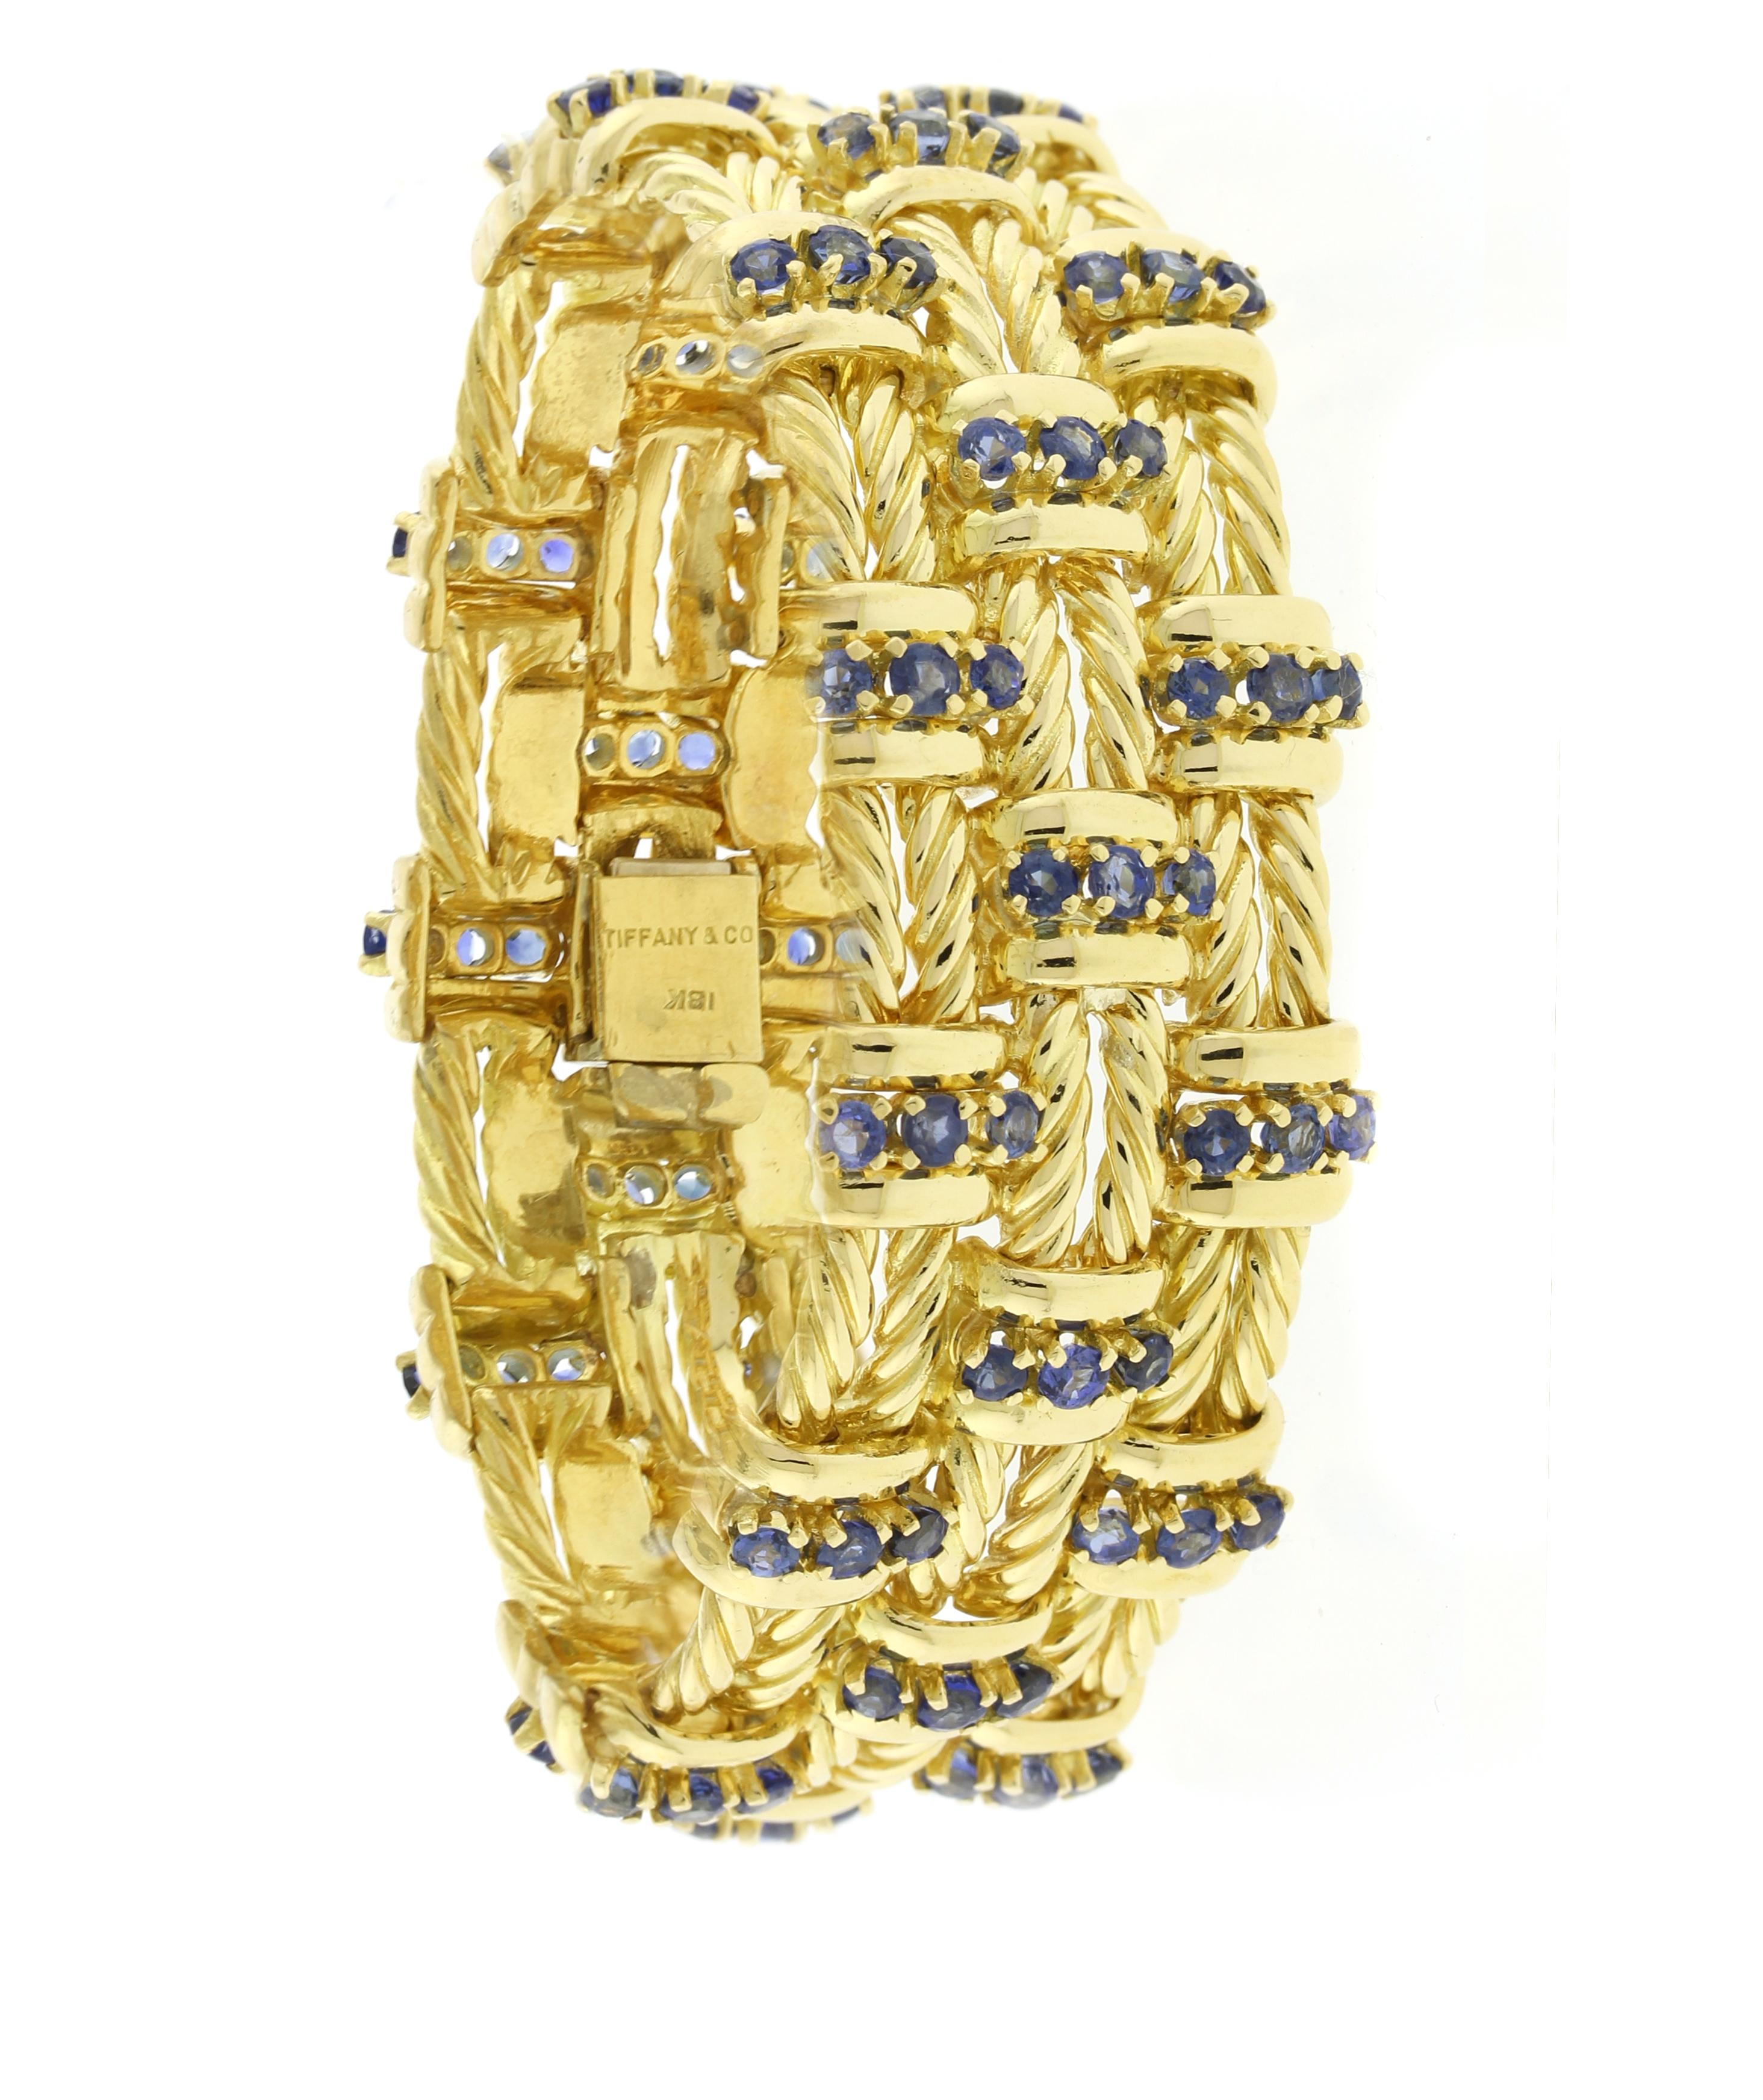 Taille brillant Tiffany & Co. Bracelet en or jaune 18 carats et saphirs